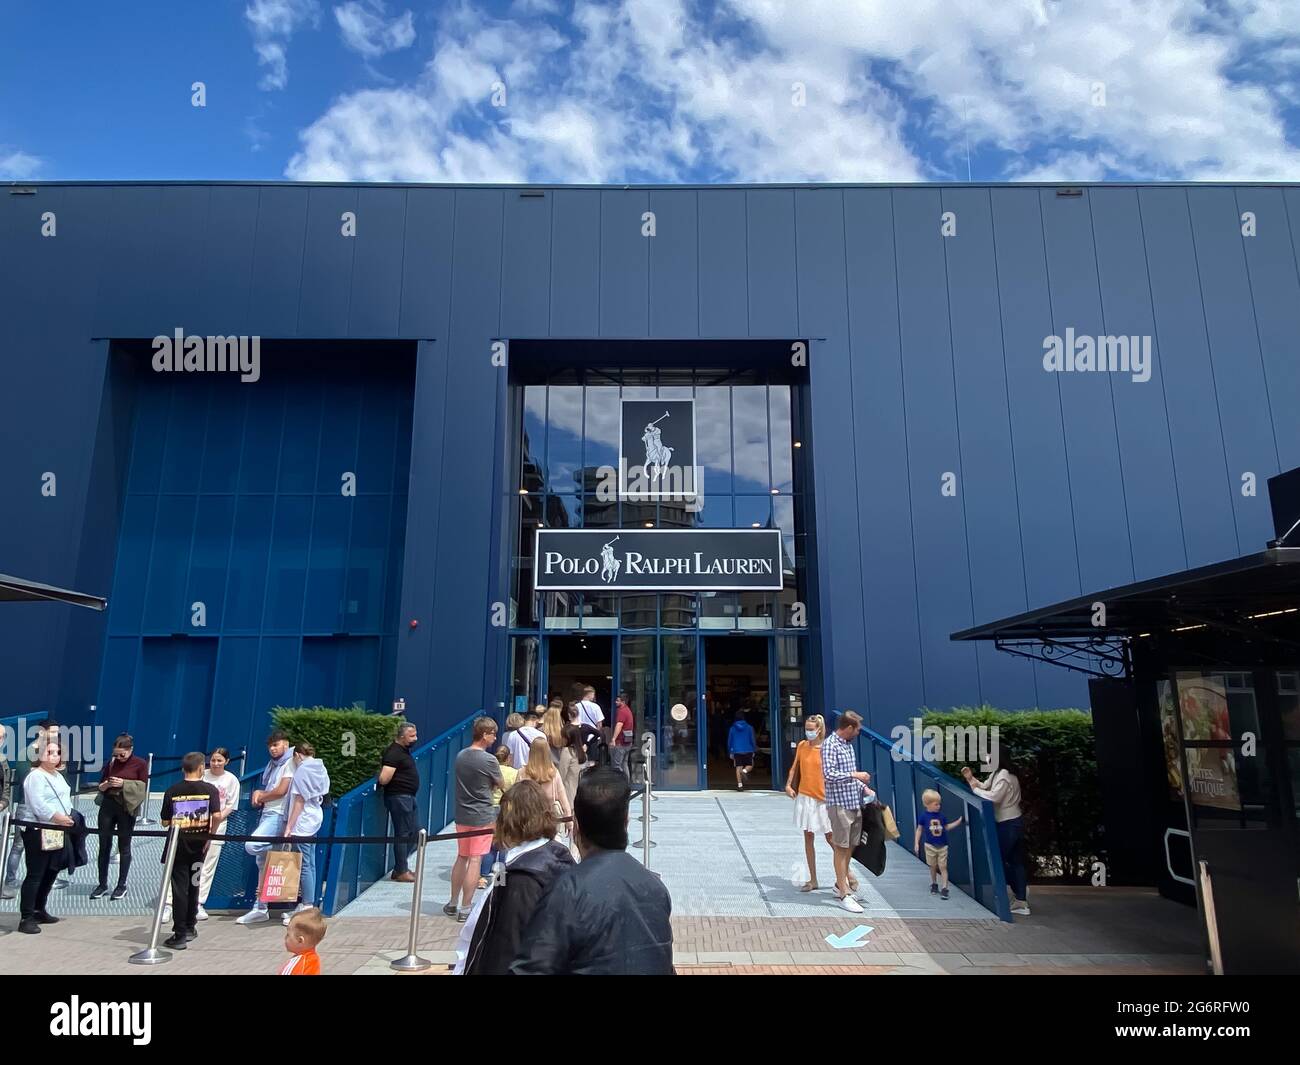 Roermond, Paesi Bassi - 1 luglio. 2021: Vista sulla facciata blu del  negozio di moda polo ralph lauren con coda di persone all'esterno  dell'ingresso Foto stock - Alamy